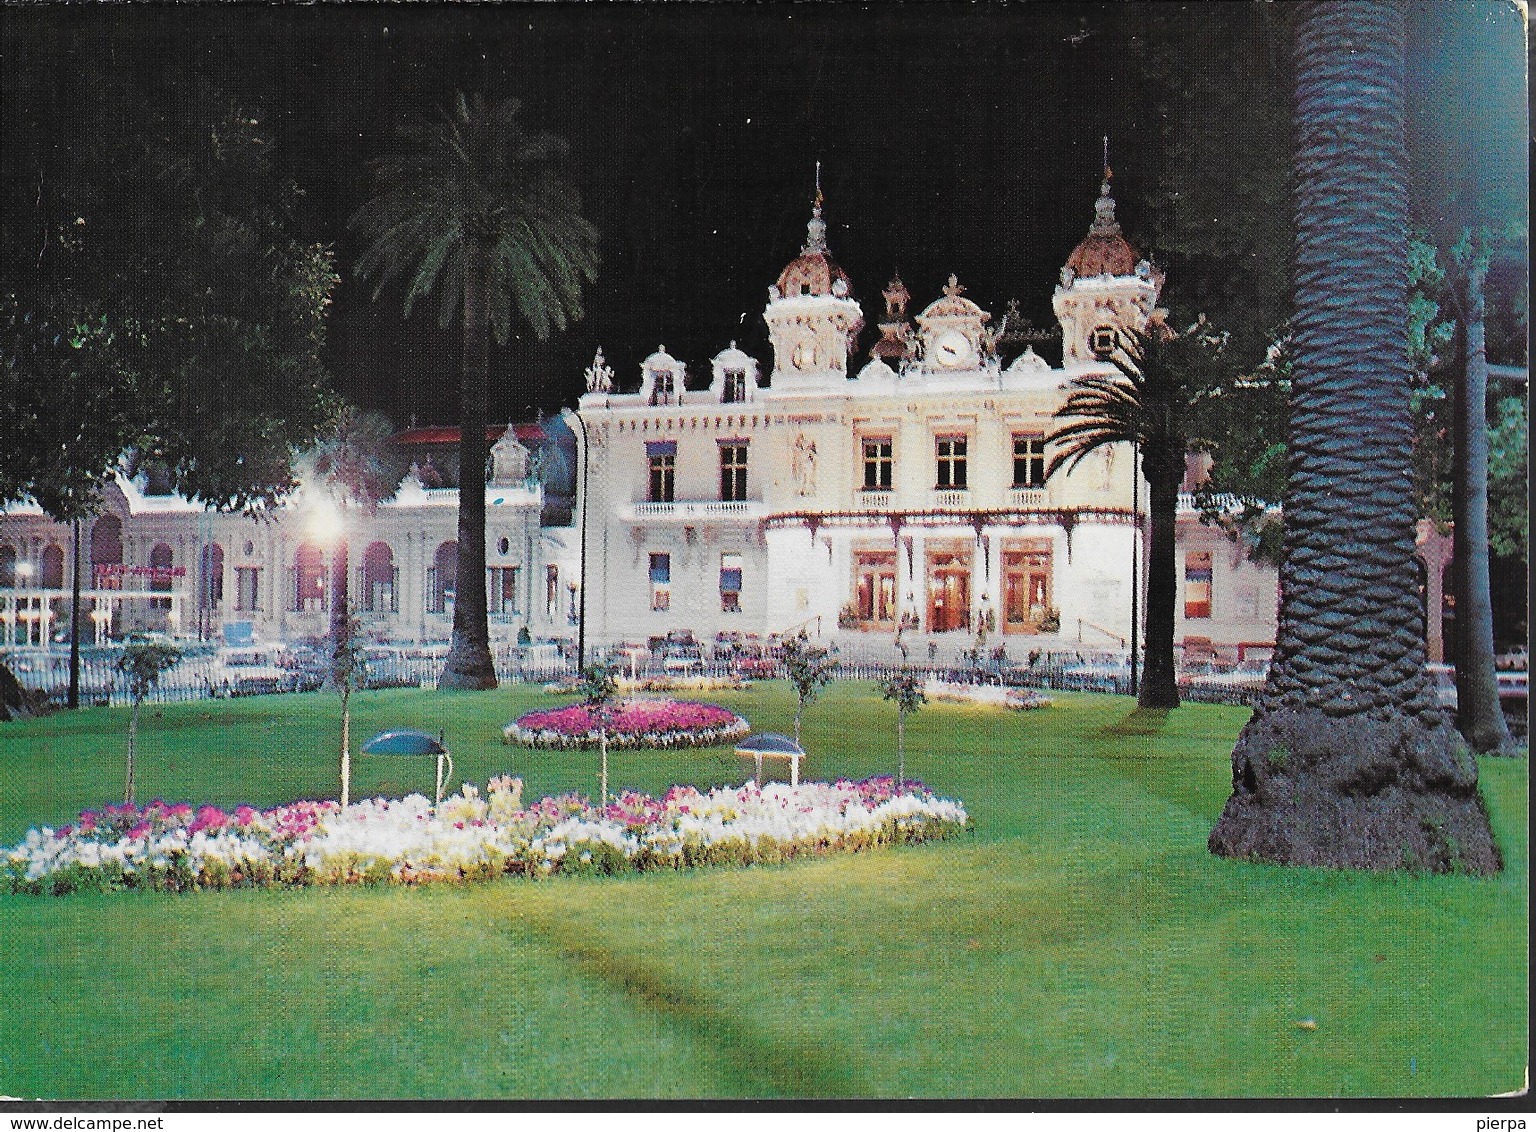 MONTECARLO - CASINO' NOTTURNO - VIAGGIATA 1973 FRANCOBOLLO ASPORTATO - Casino